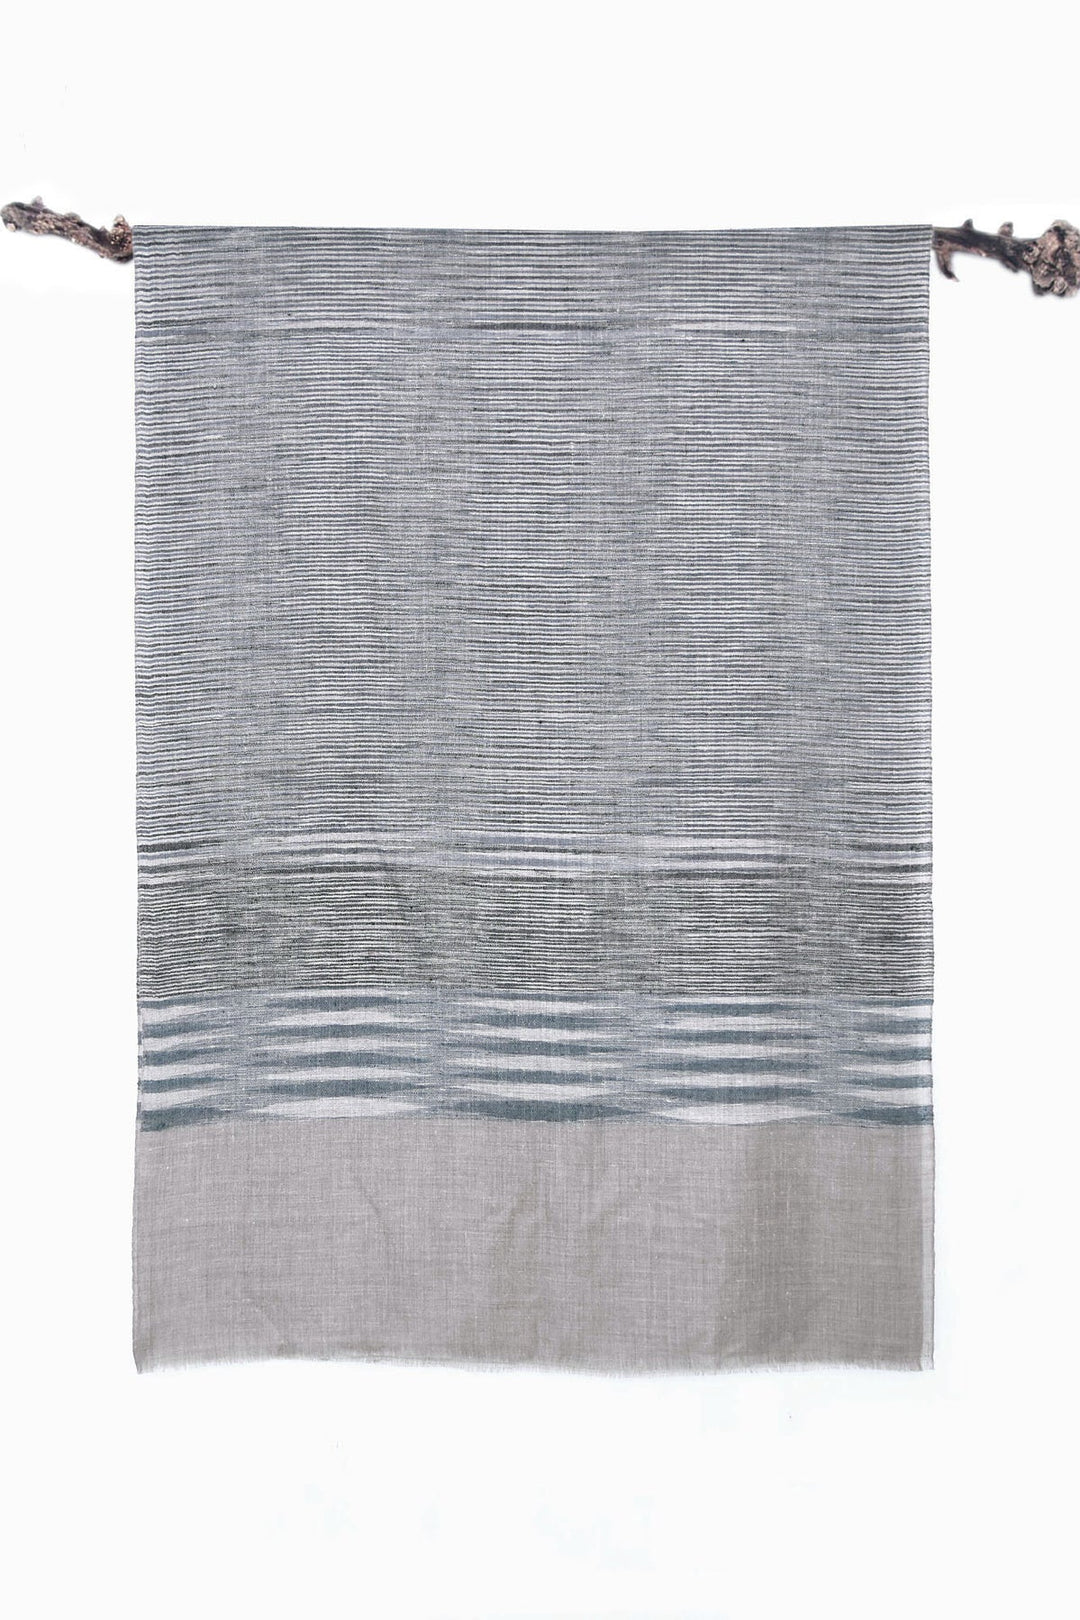 Beige & Blue Pashmina Stole - 72cm x 200cm, Twill Weave, Elegant Design | Shannah Handwoven Pashmina Stole - Beige & Blue